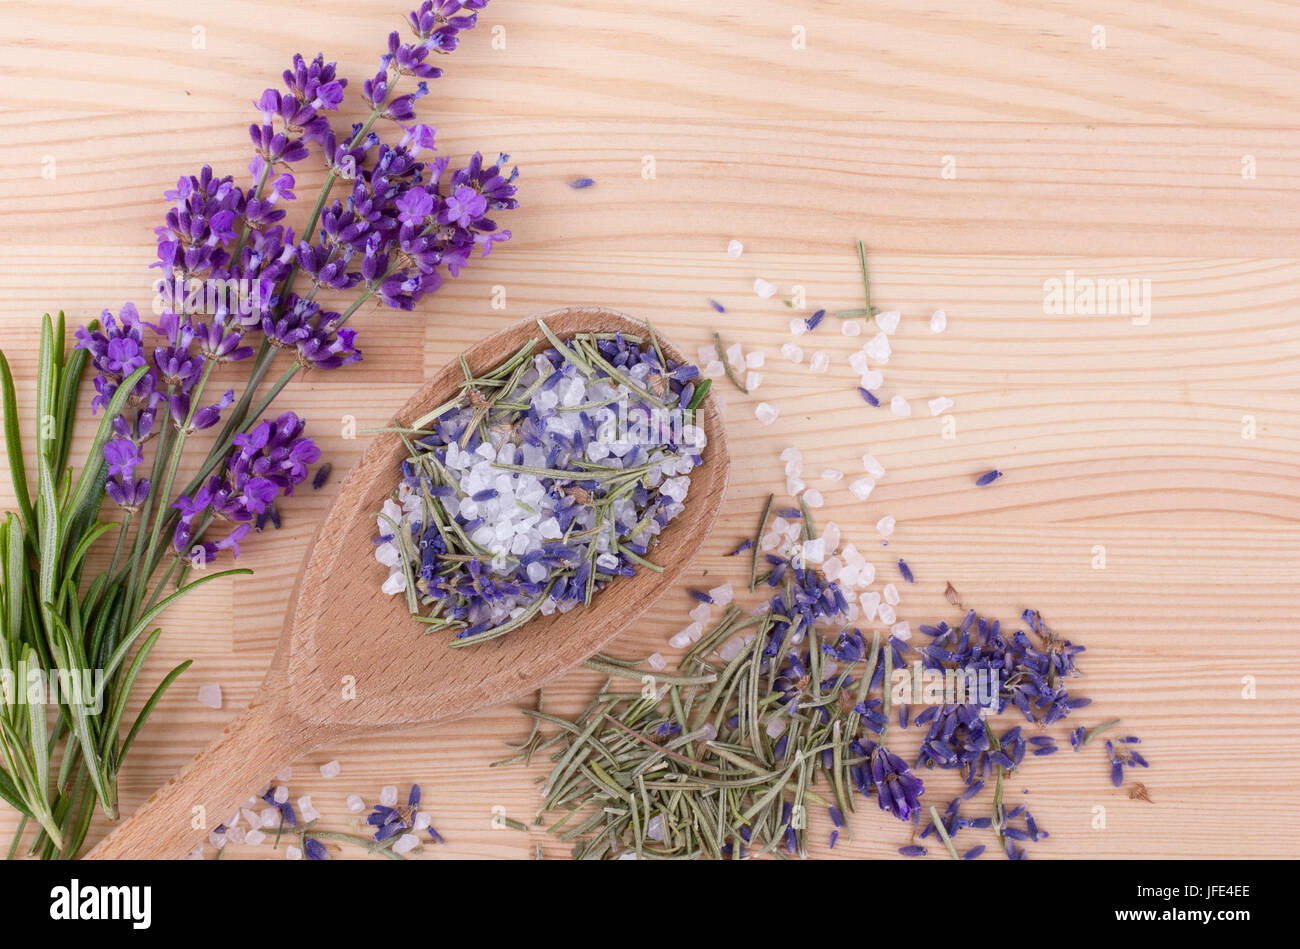 Cucchiaio con sale alle erbe aromatiche di rosmarino e lavanda fiori Foto Stock